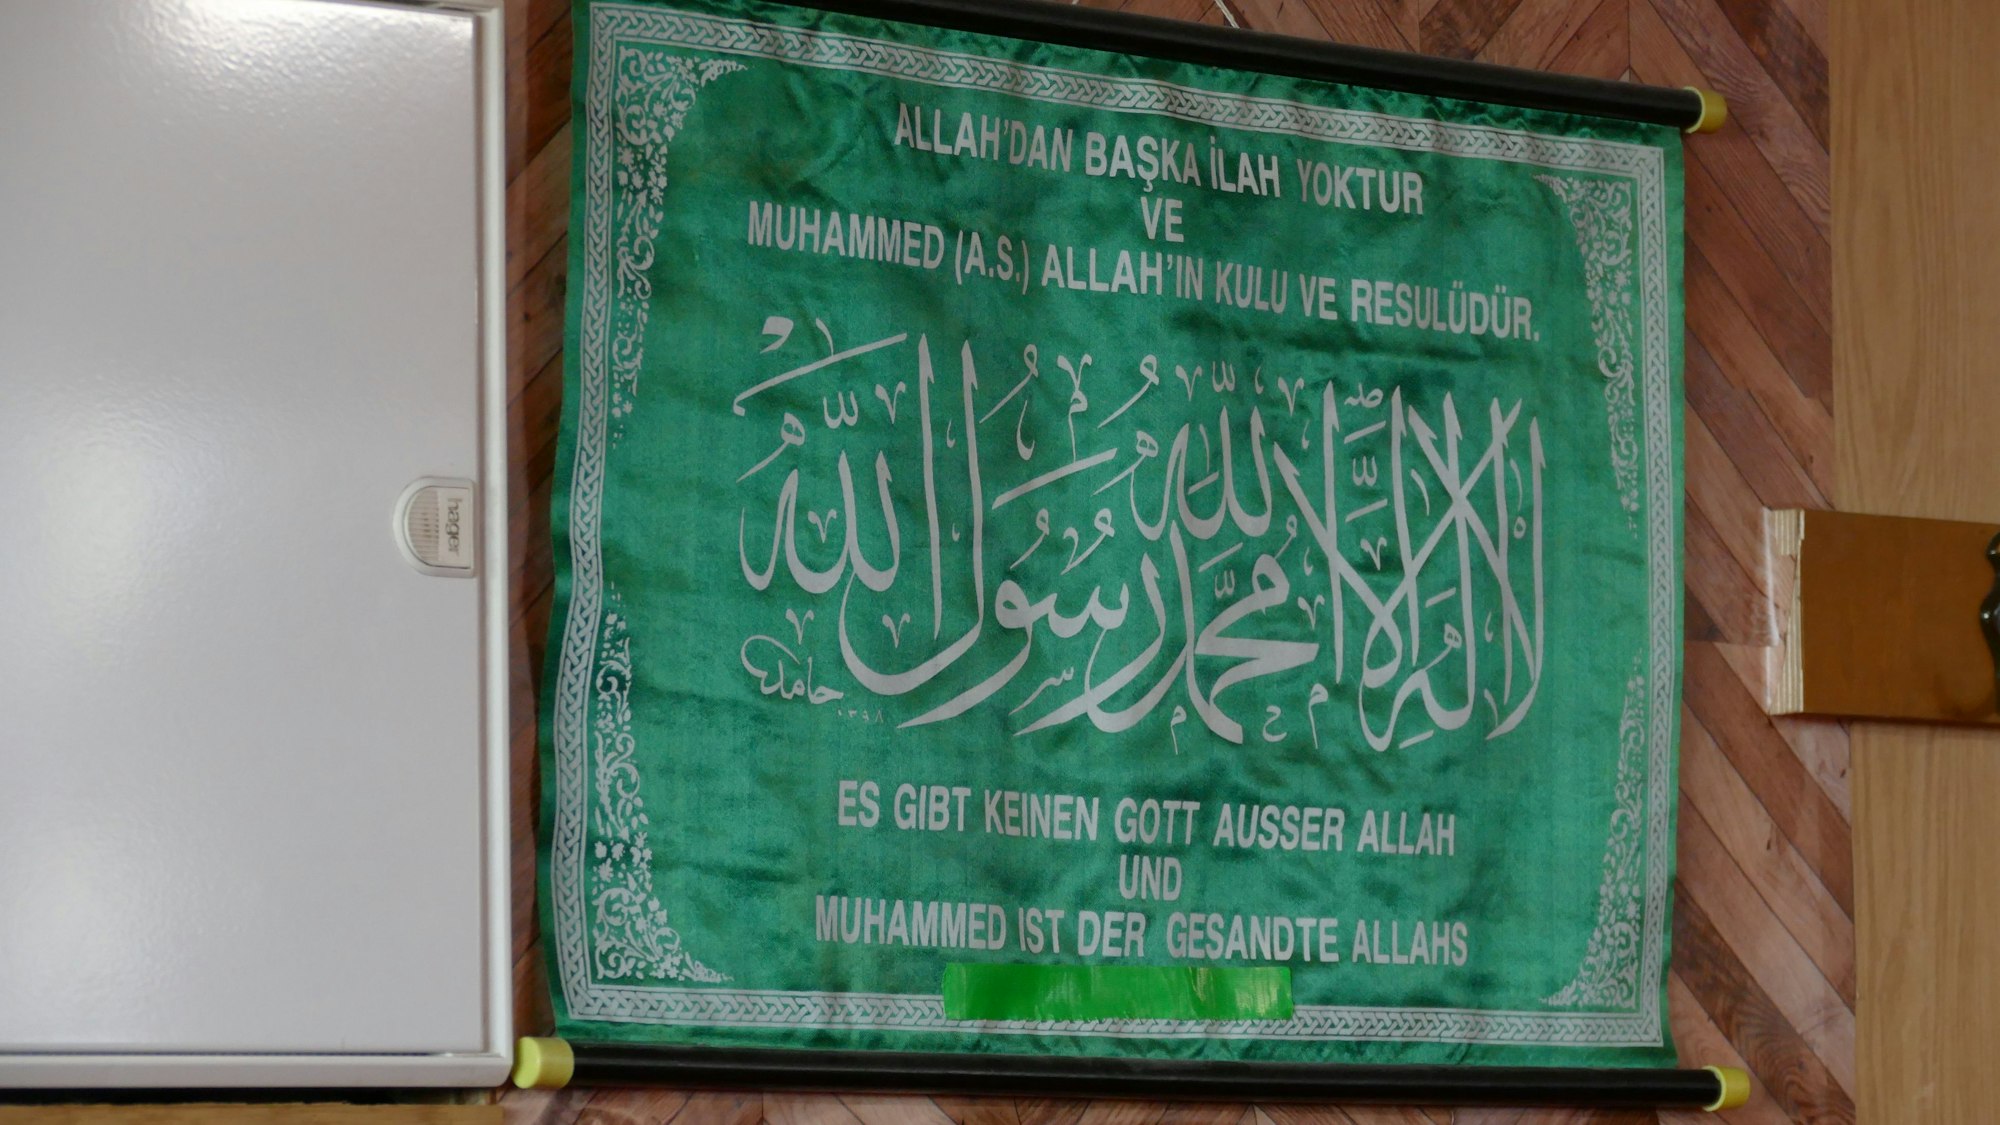 Ein grünes Schild mit arabischen Schriftzeichen.